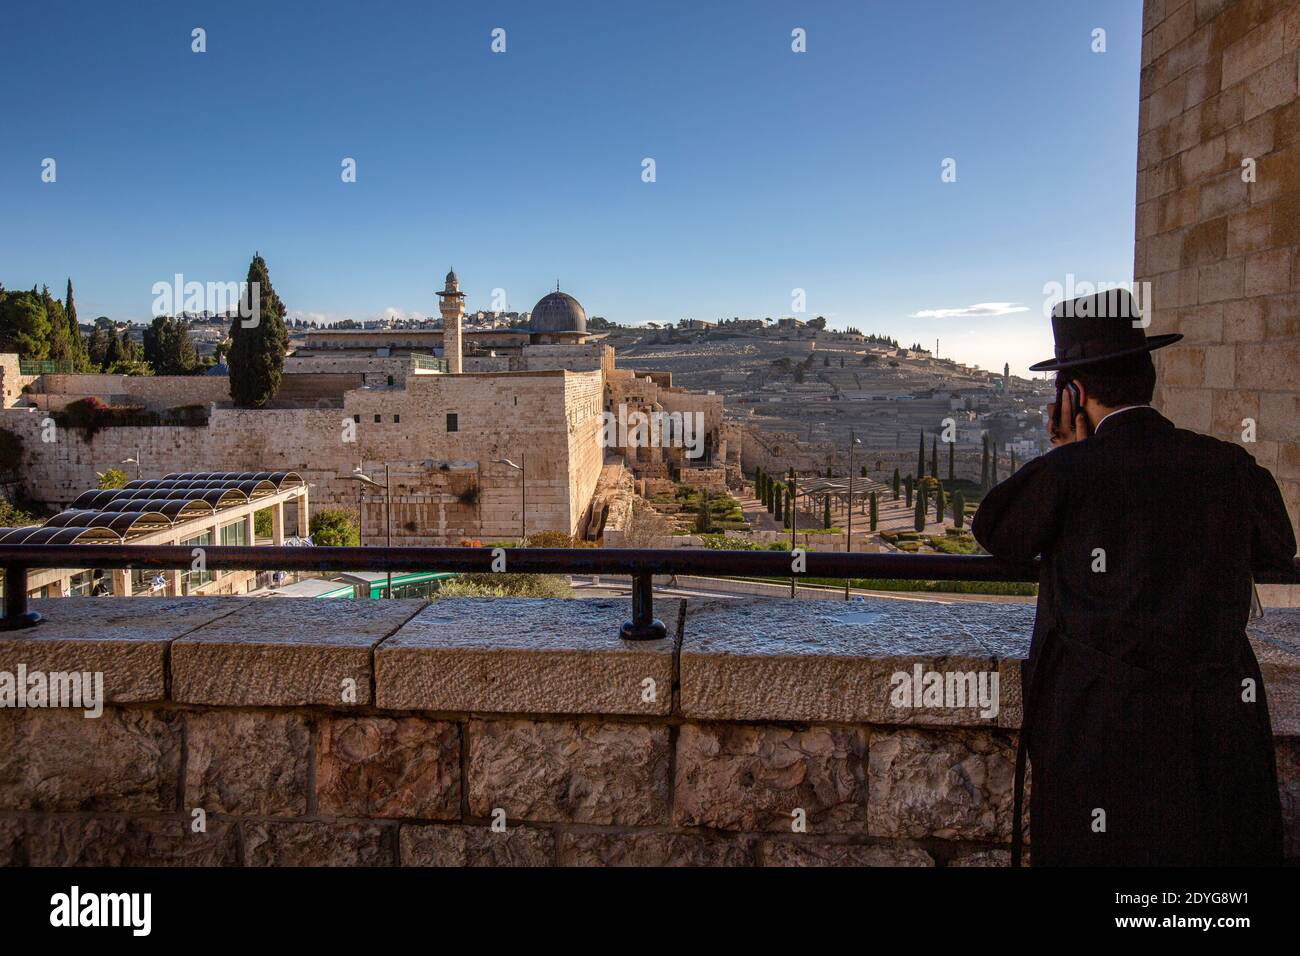 Ein Ultra-orthodoxer Jude, der vor der Westmauer, dem Tempelberg und der Al Aqsa Moschee steht. Tempel Jerusalem, die Altstadt von Jerusalem, Israel Stockfoto